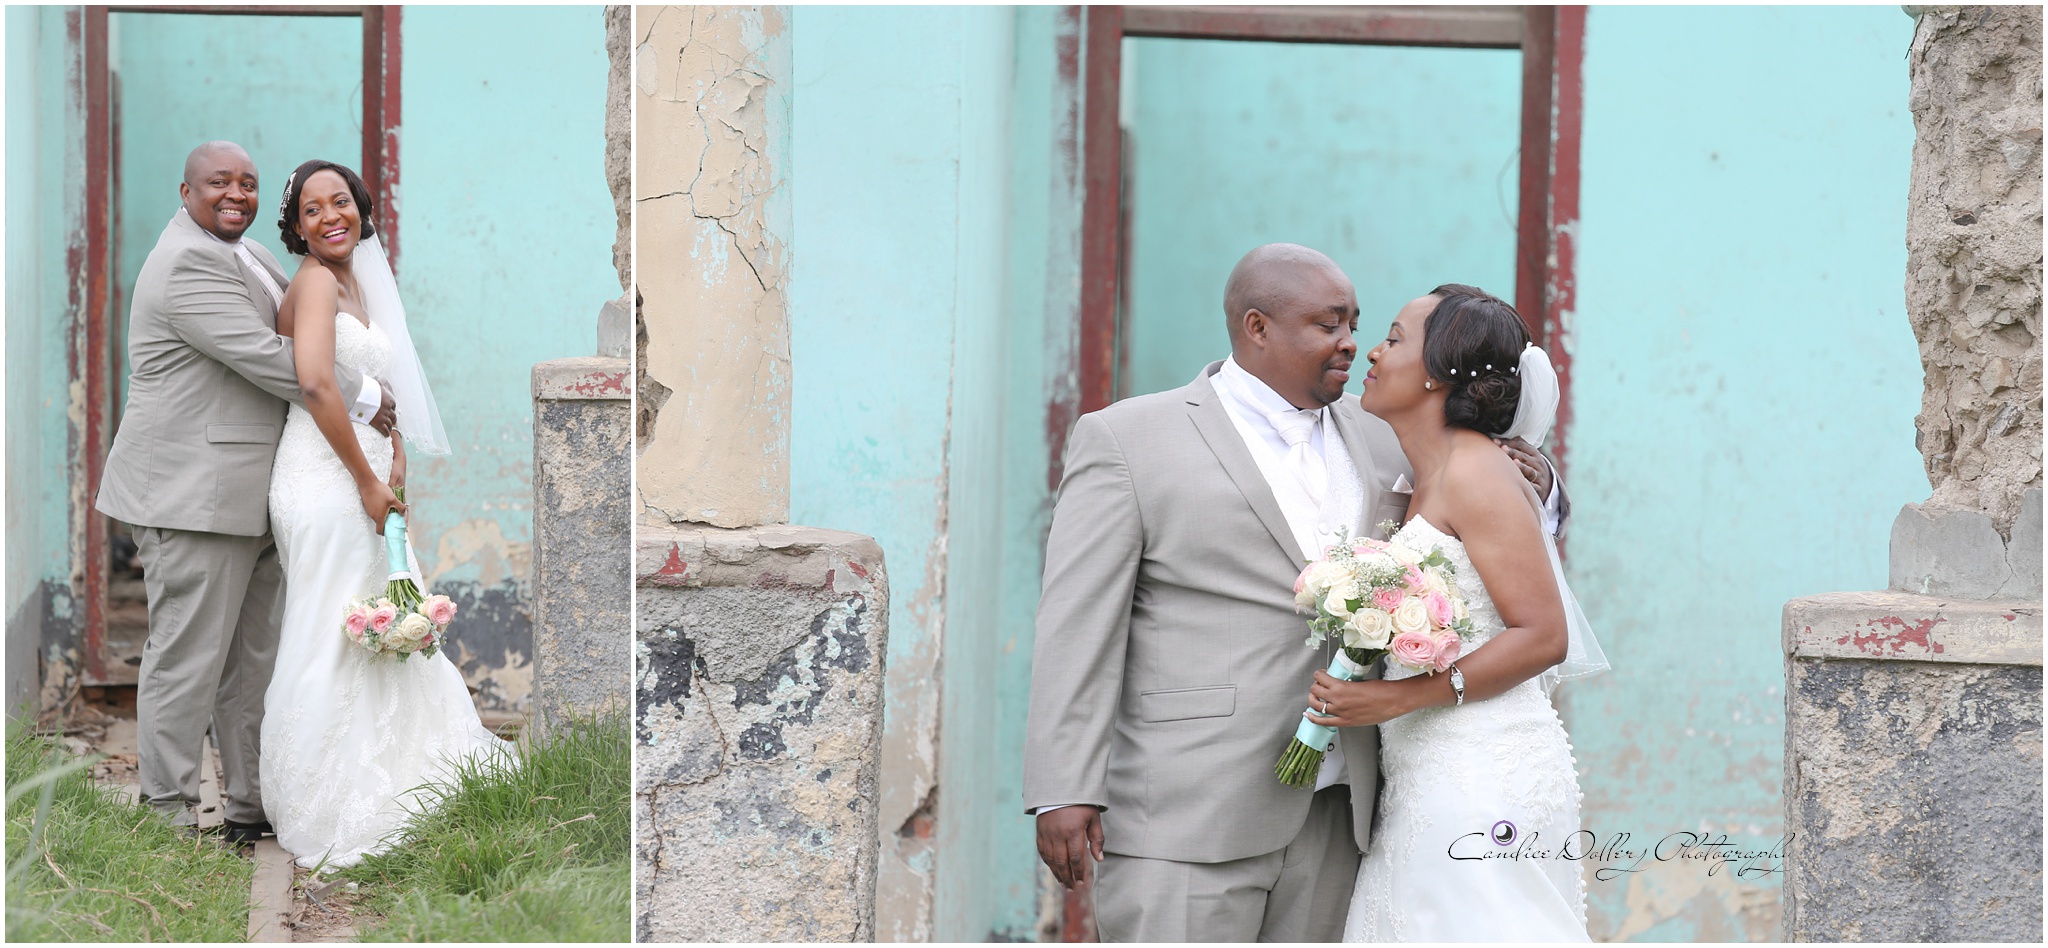 Masivuye & Khuselo's Wedding - Candice Dollery Photography_7274